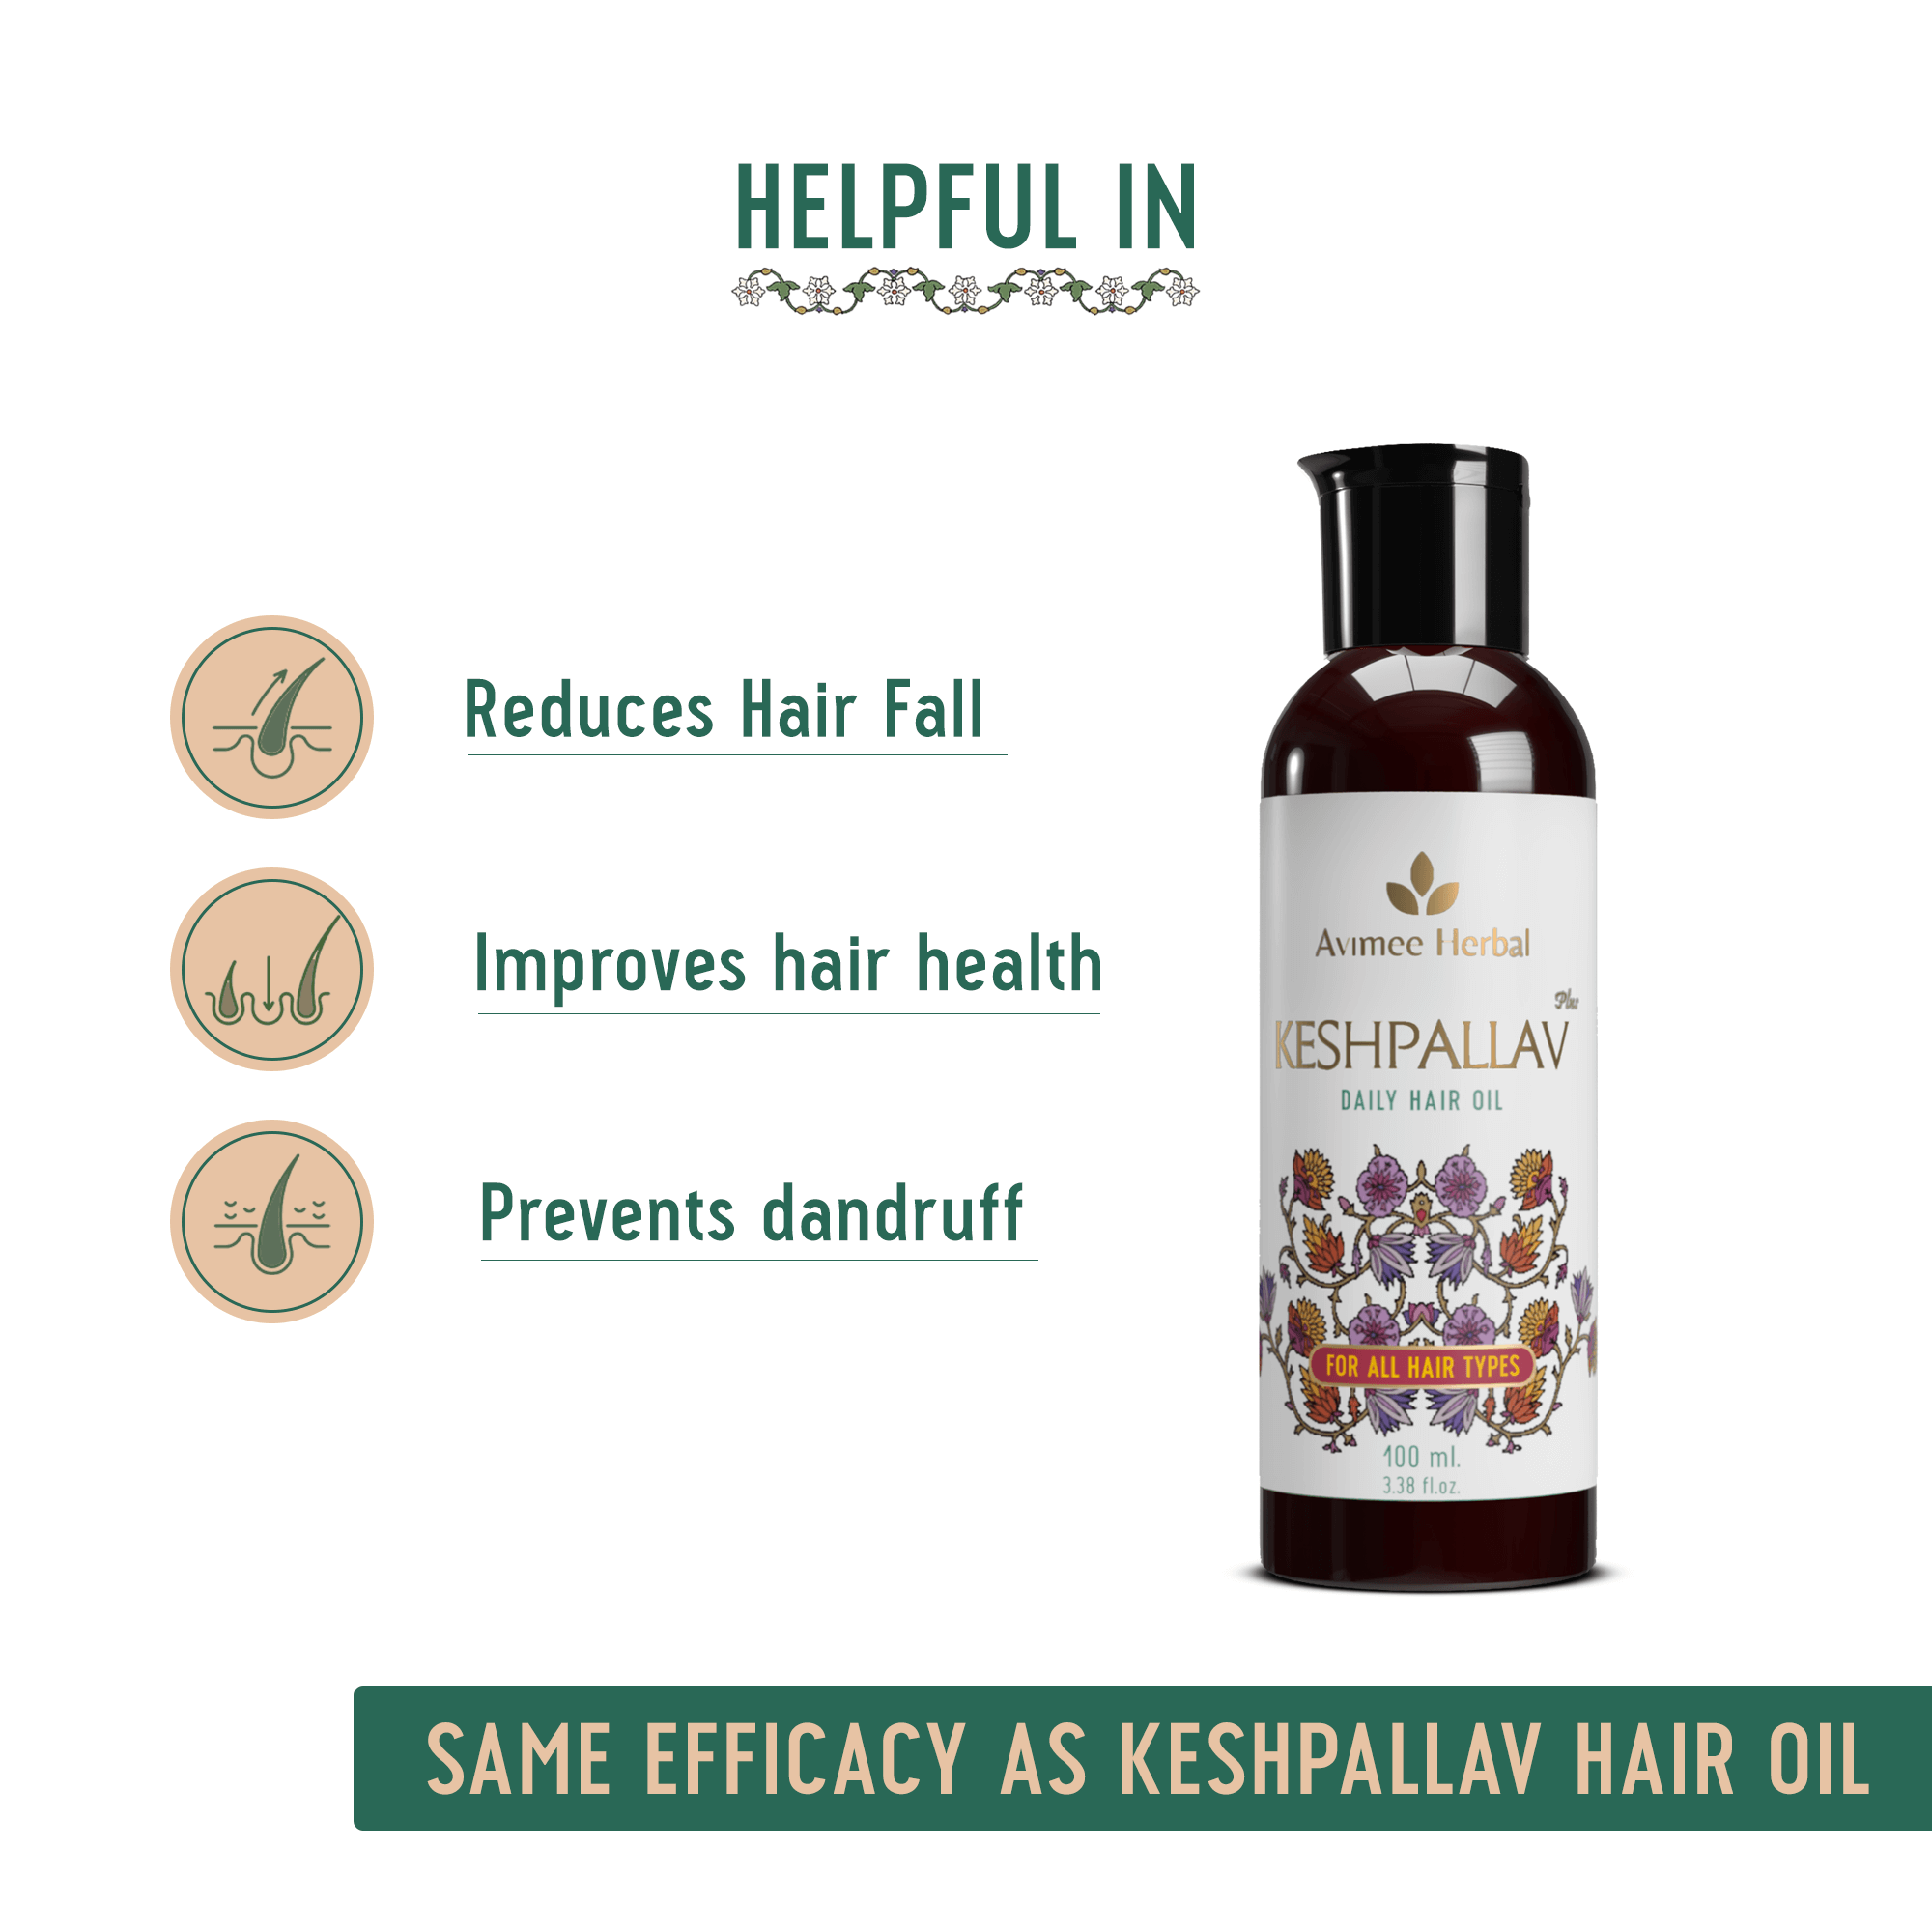 Keshpallav Plus Daily Hair Oil for Hair Growth